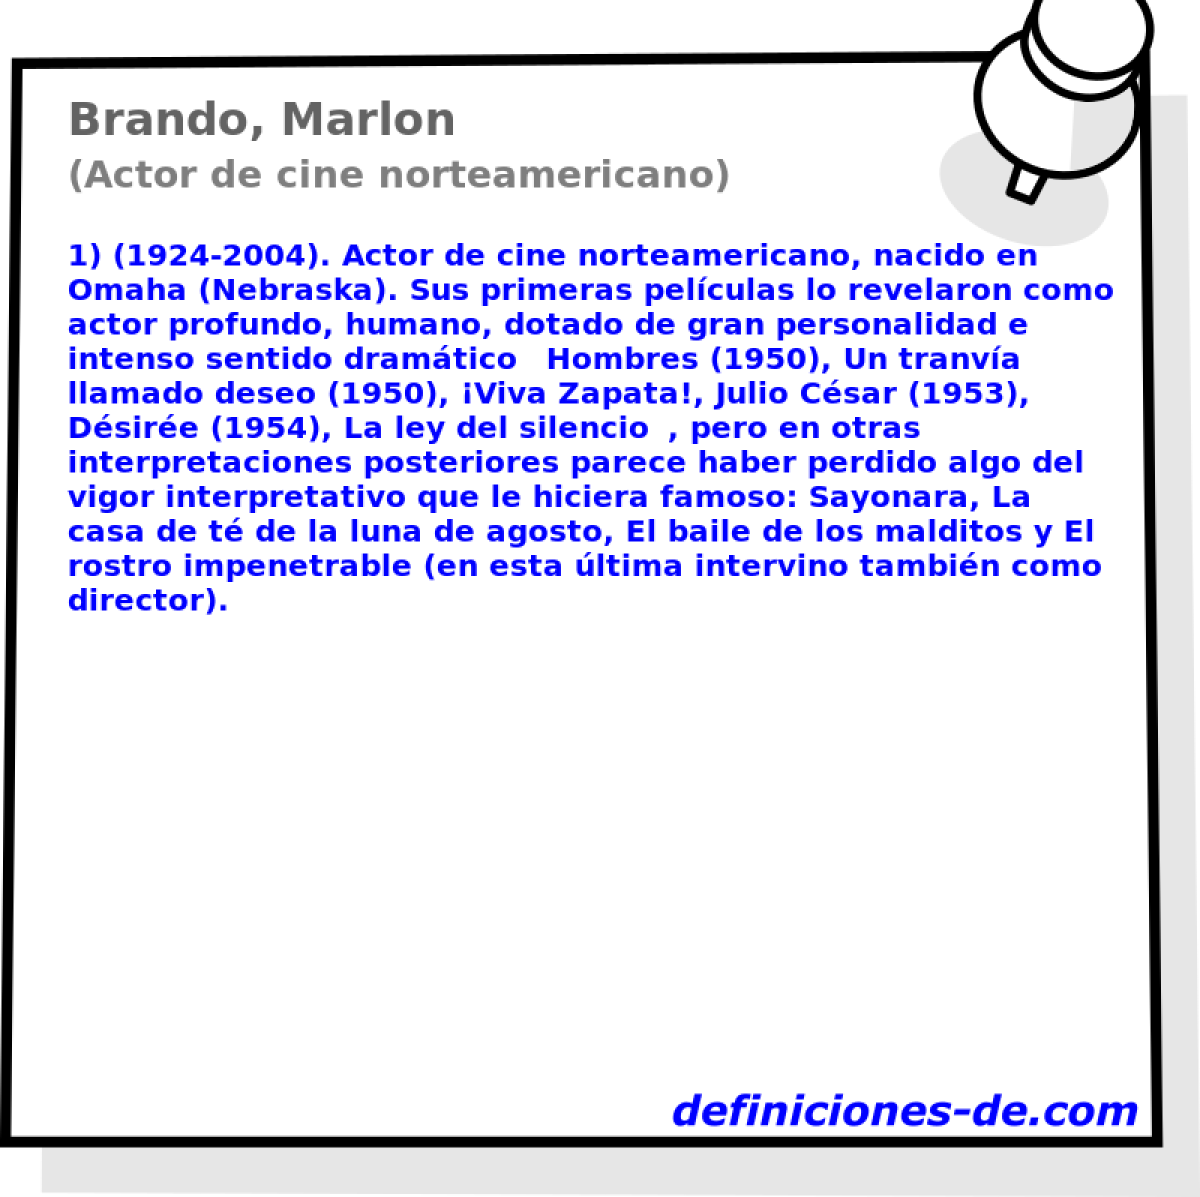 Brando, Marlon (Actor de cine norteamericano)